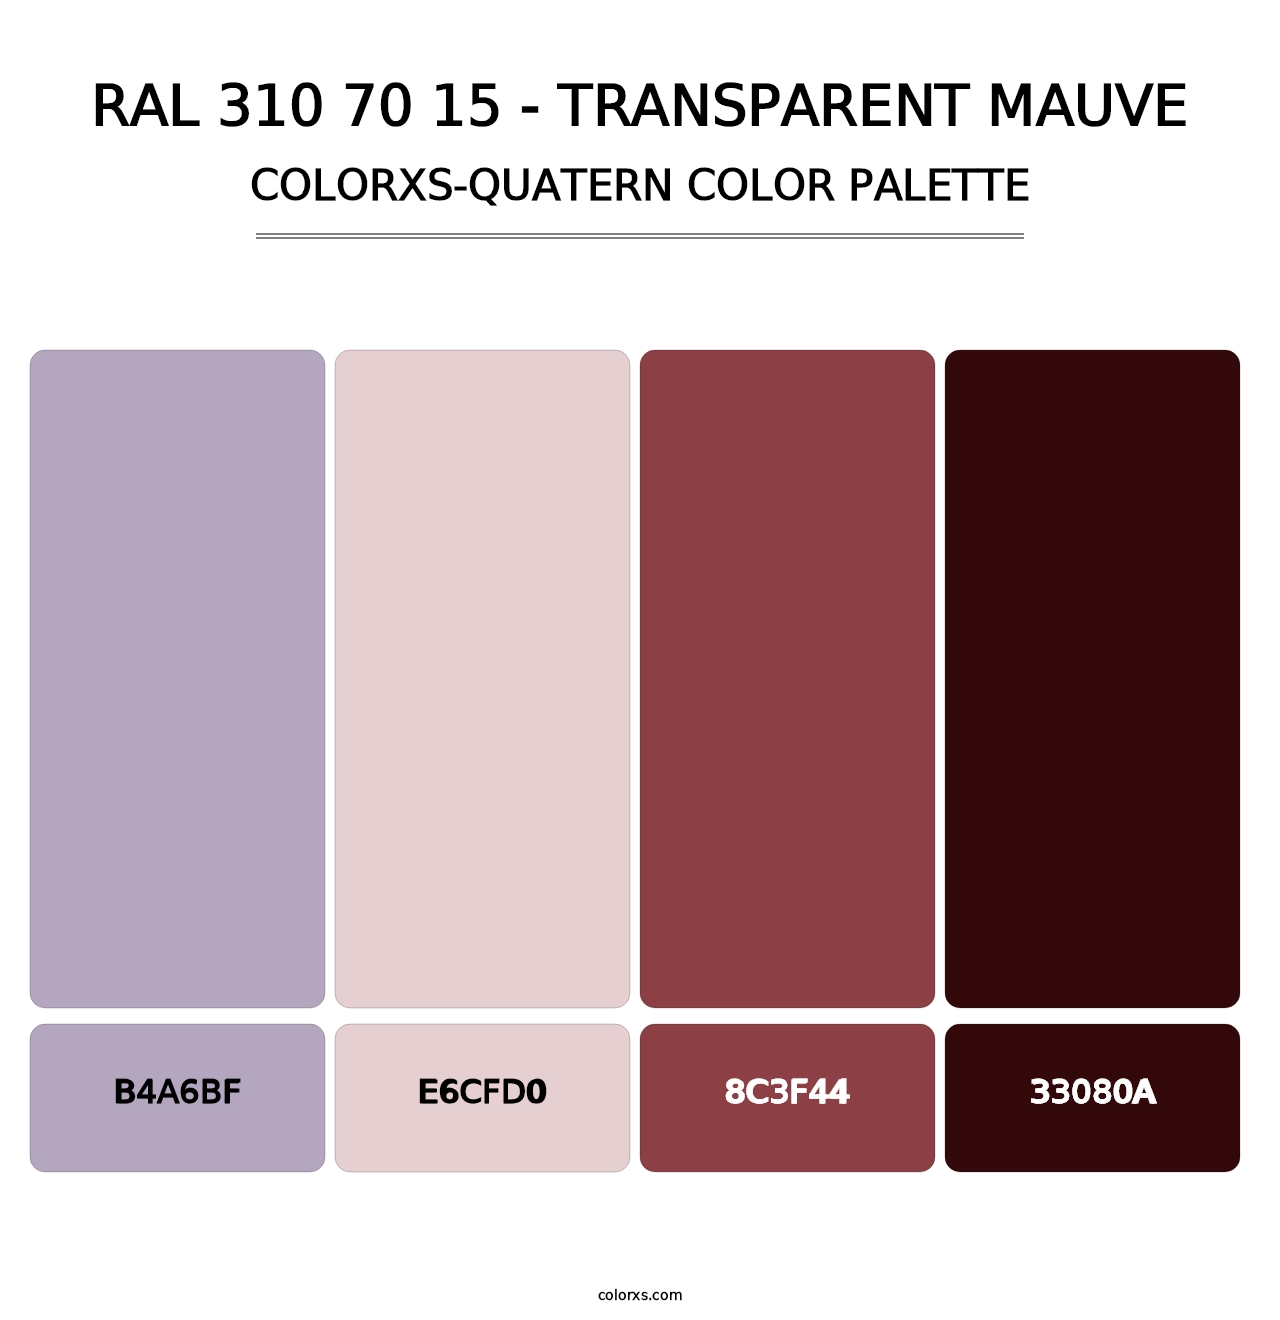 RAL 310 70 15 - Transparent Mauve - Colorxs Quatern Palette